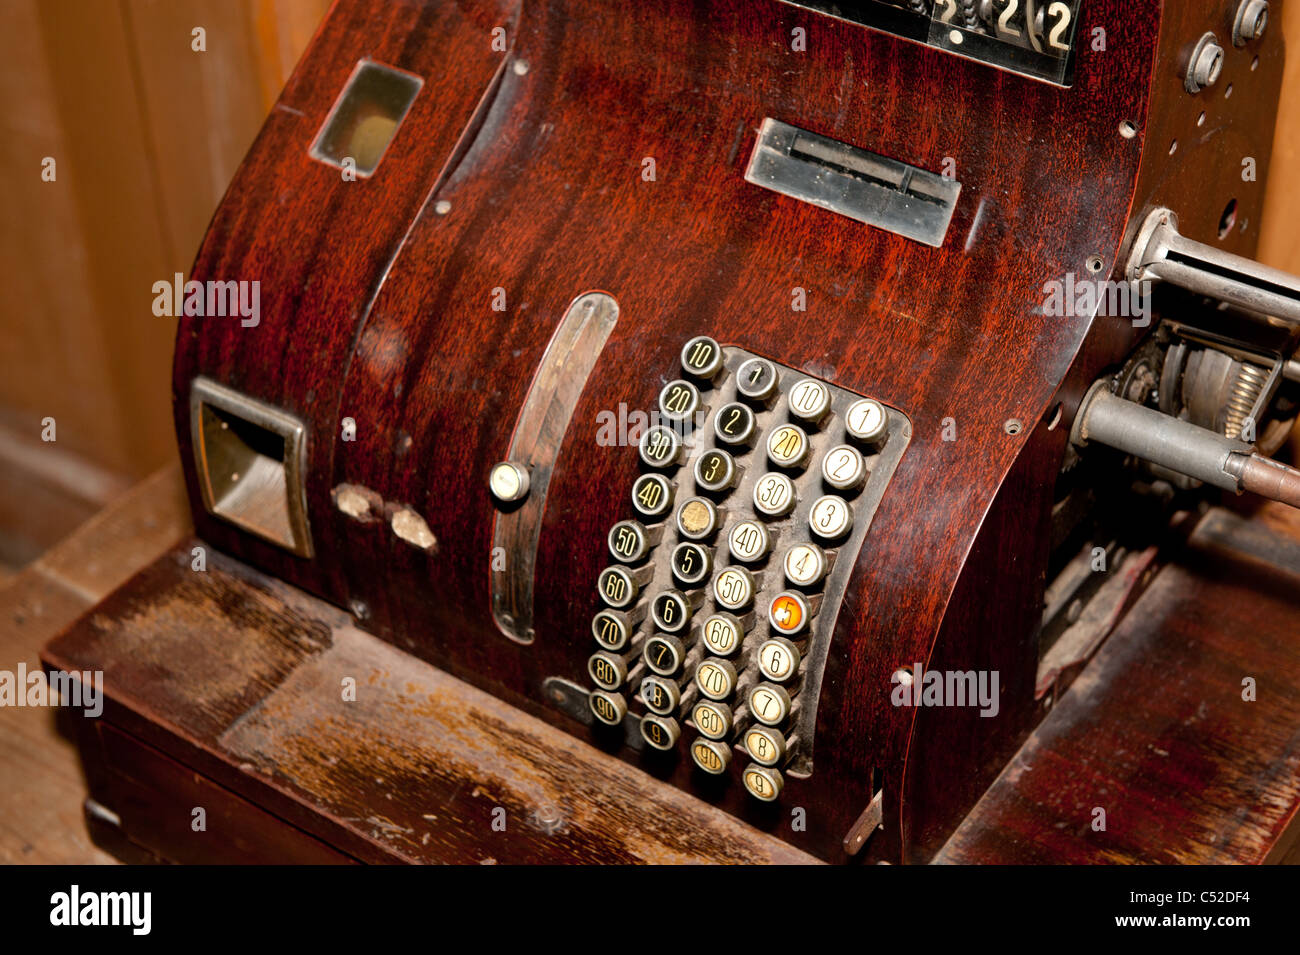 L'ancienne caisse enregistreuse.Photo libre. Années 1800-1900 Photo Stock -  Alamy